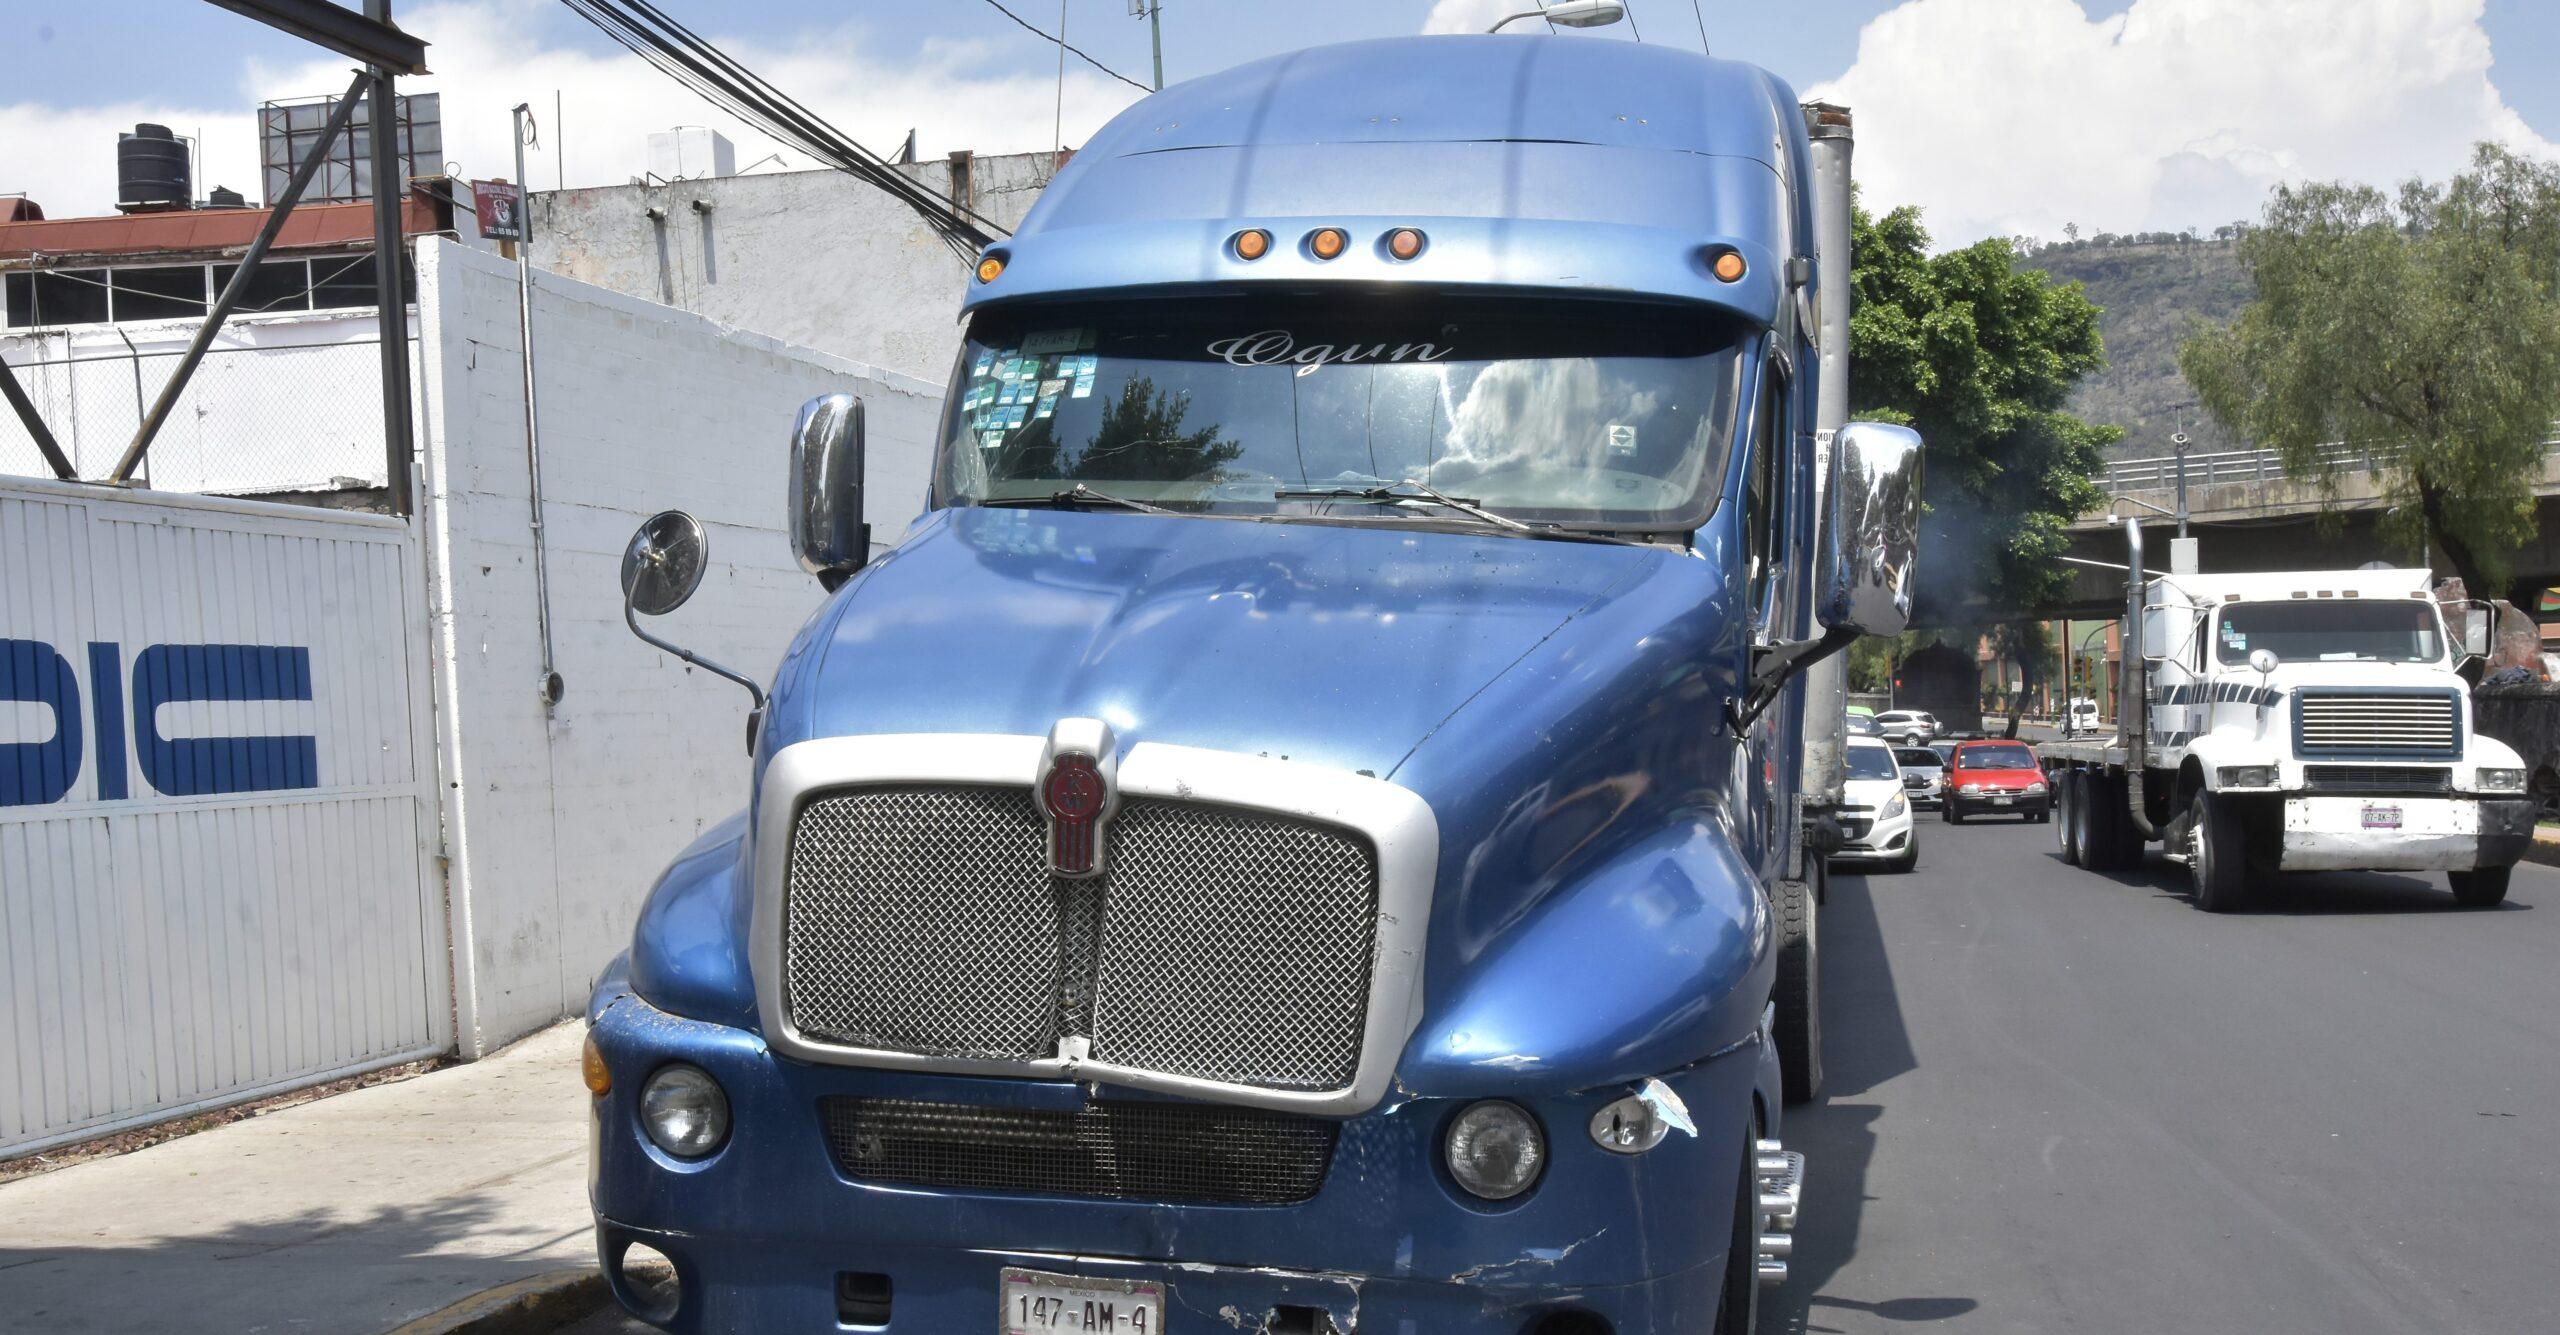 Aumenta 300% robo a transporte de carga con violencia en Benito Juárez durante 2019